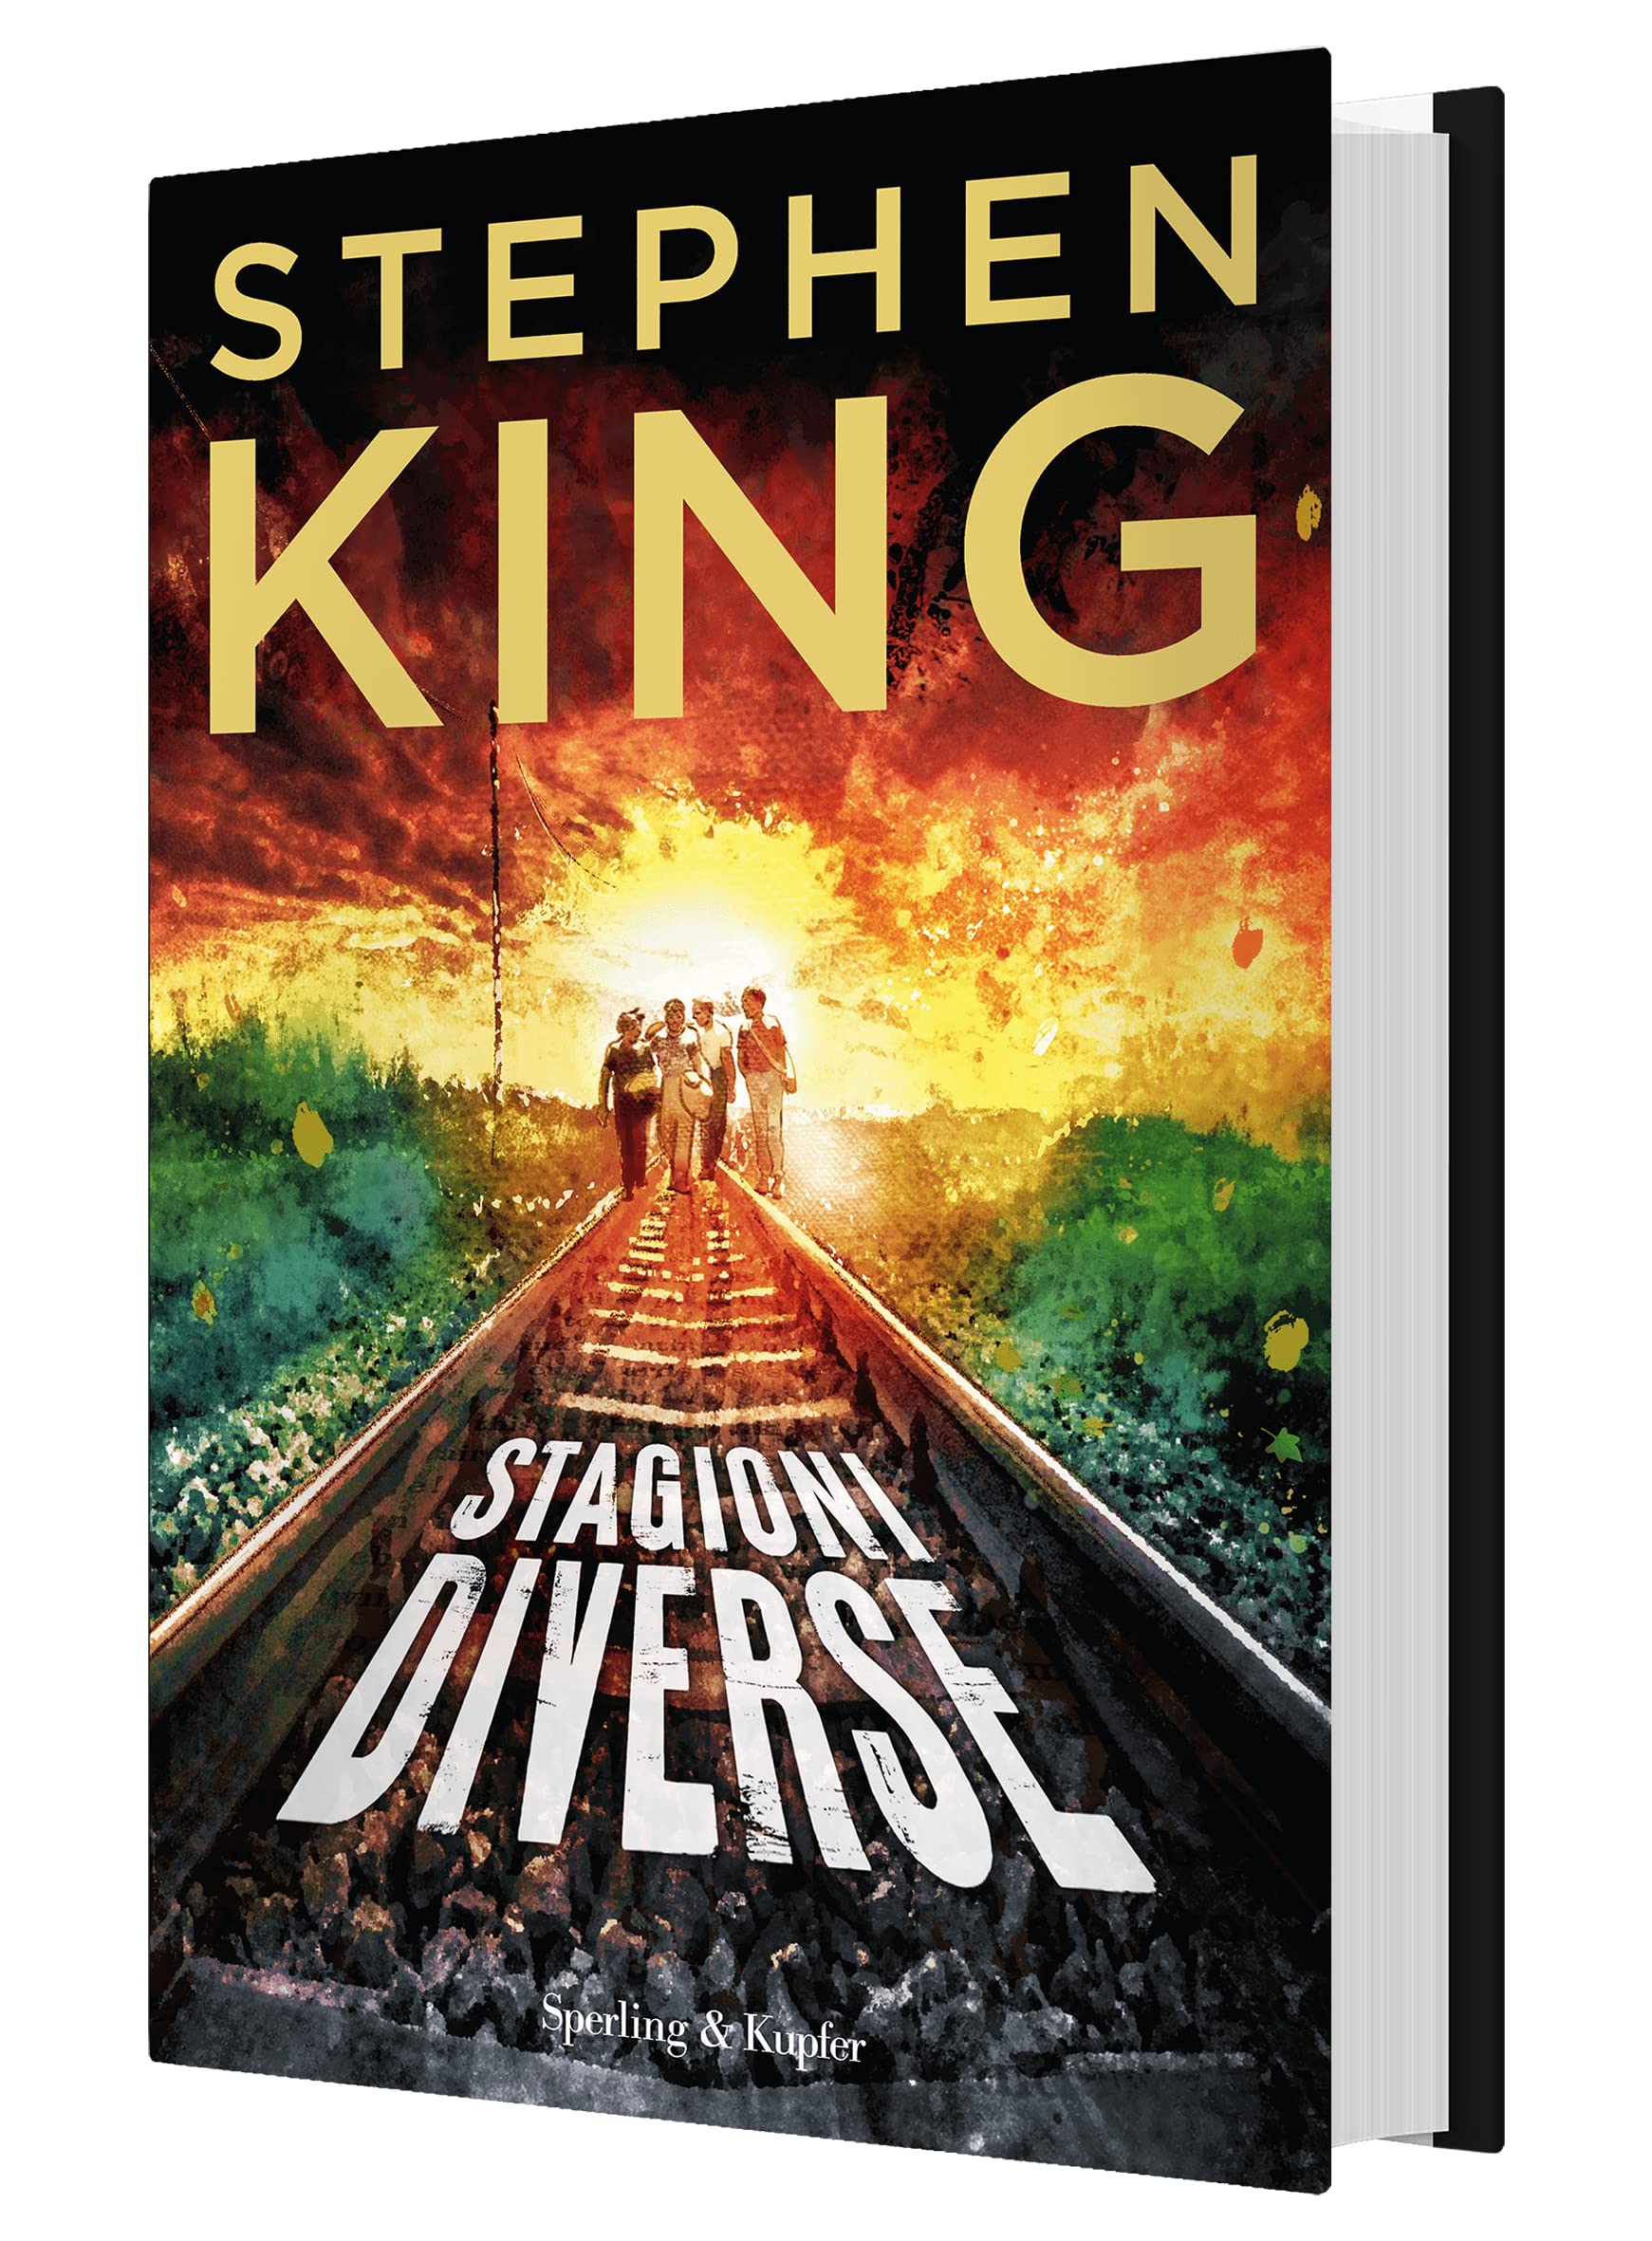 STEPHEN KING ONLY: «Stagioni diverse» esce con una nuova